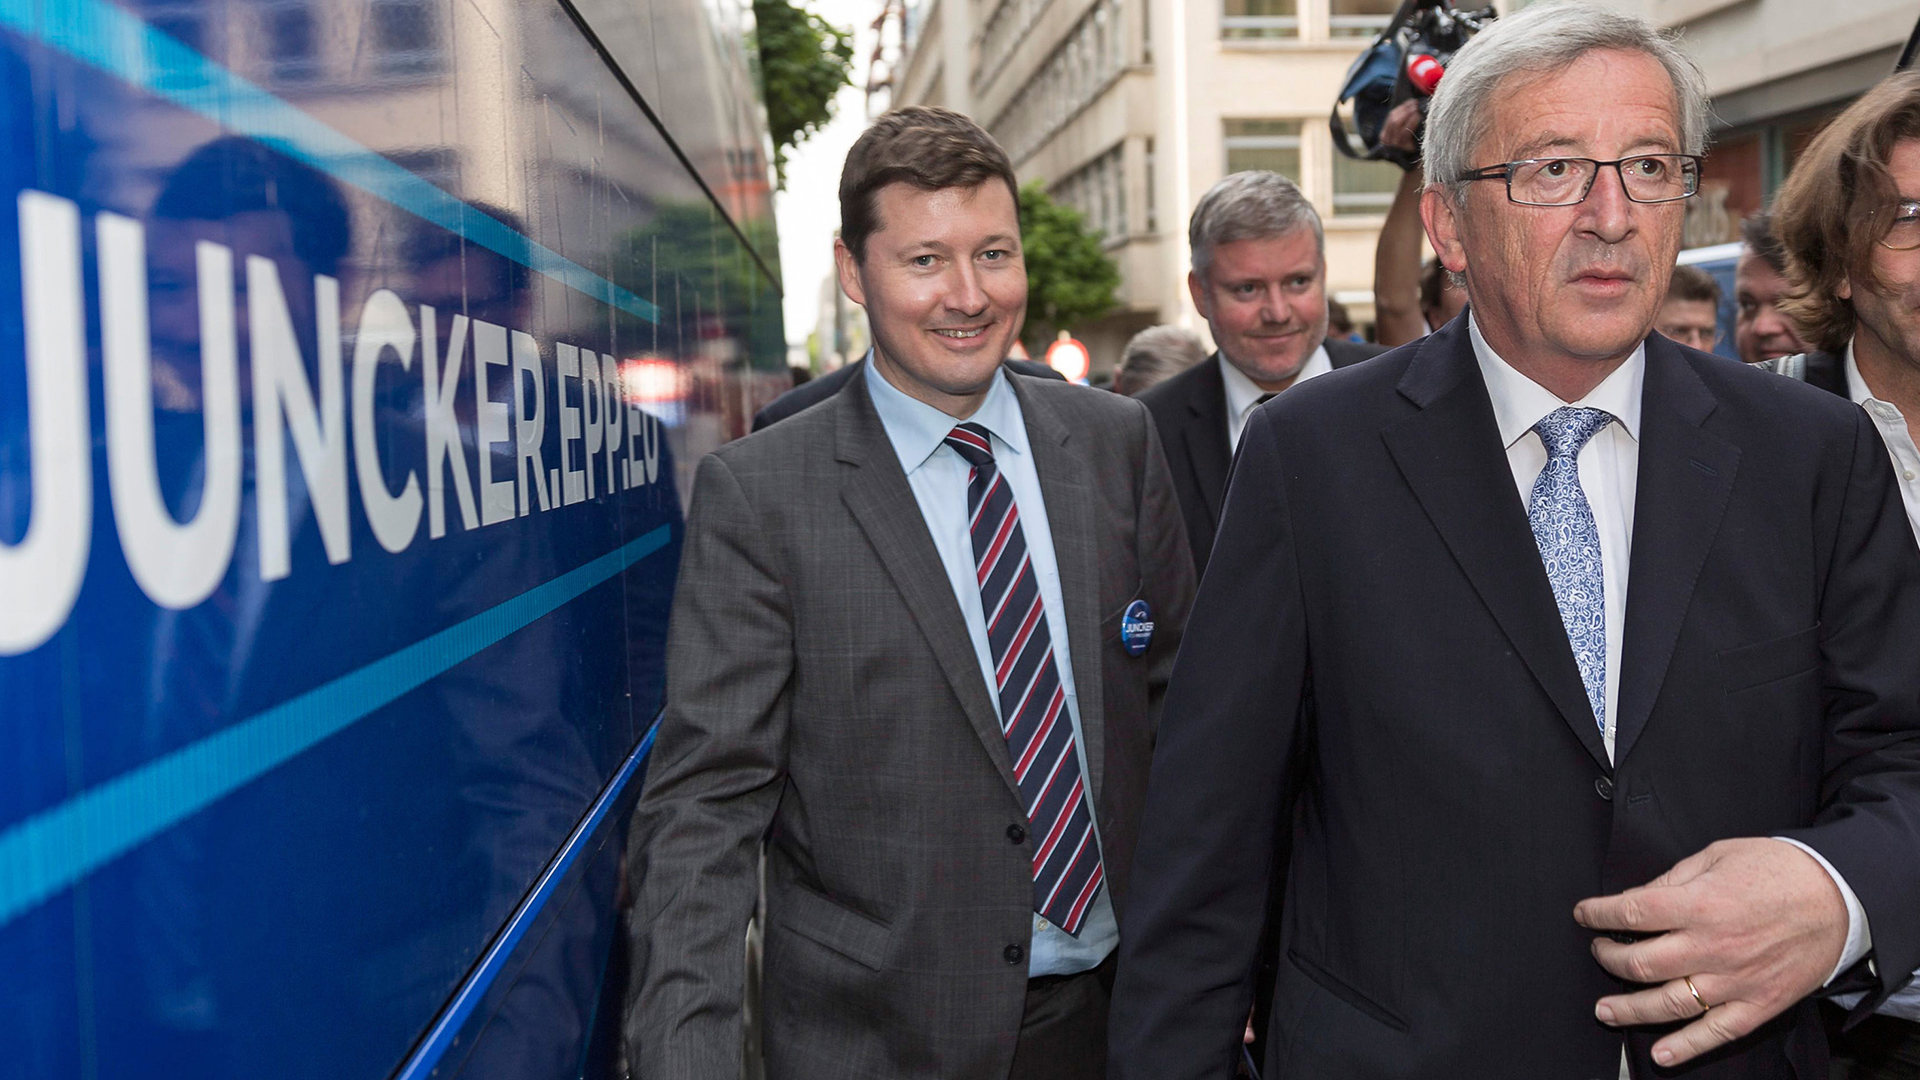 Selmayr und Juncker vor Tourbus | dpa